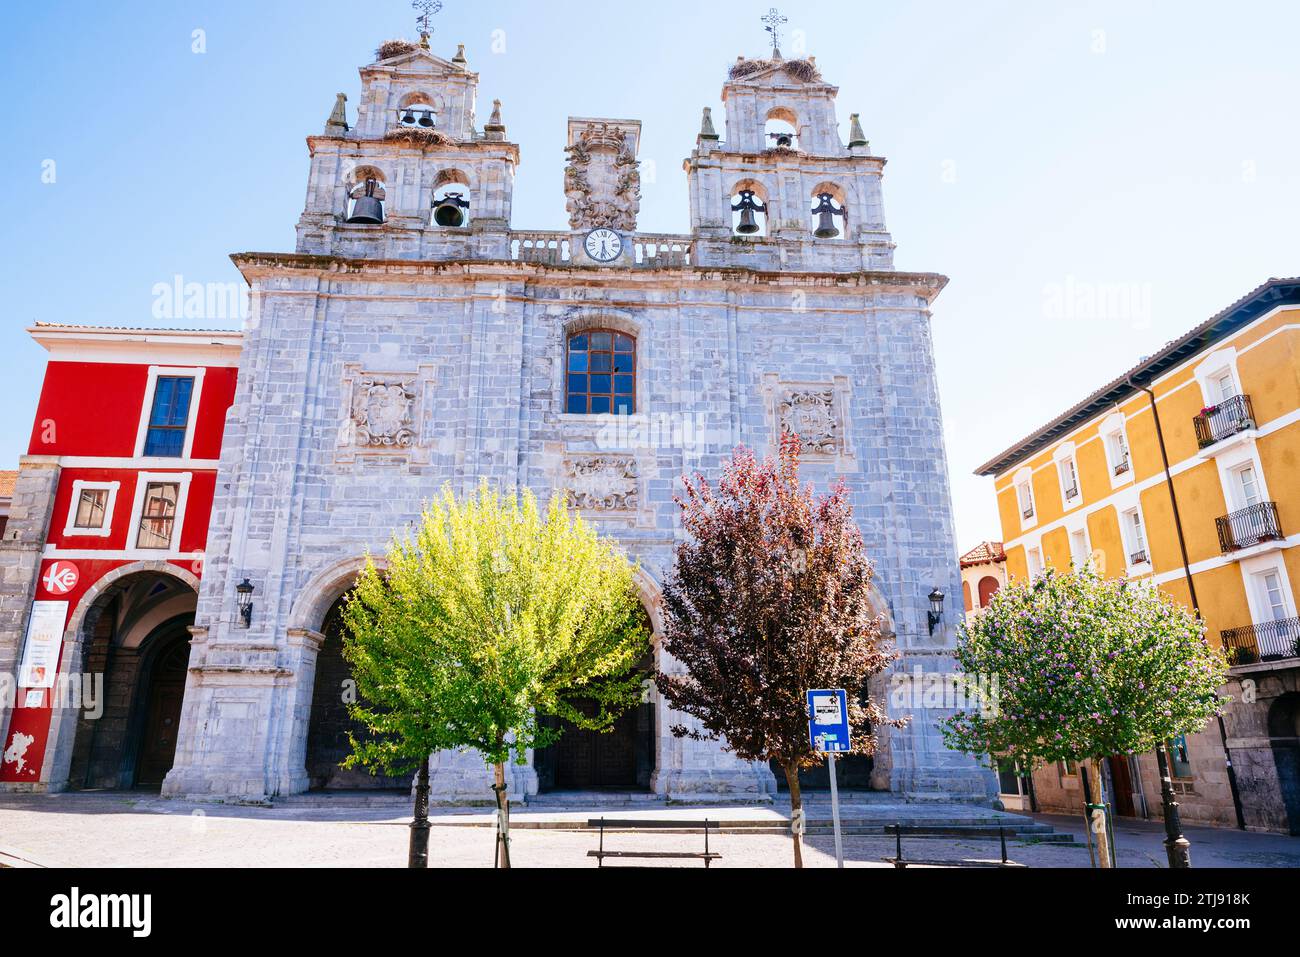 Église de la Sainte famille - Iglesia de la Sagrada familia. Plaza de los Fueros, Orduña, Vizcaya, País Vasco, Espagne, Europe Banque D'Images